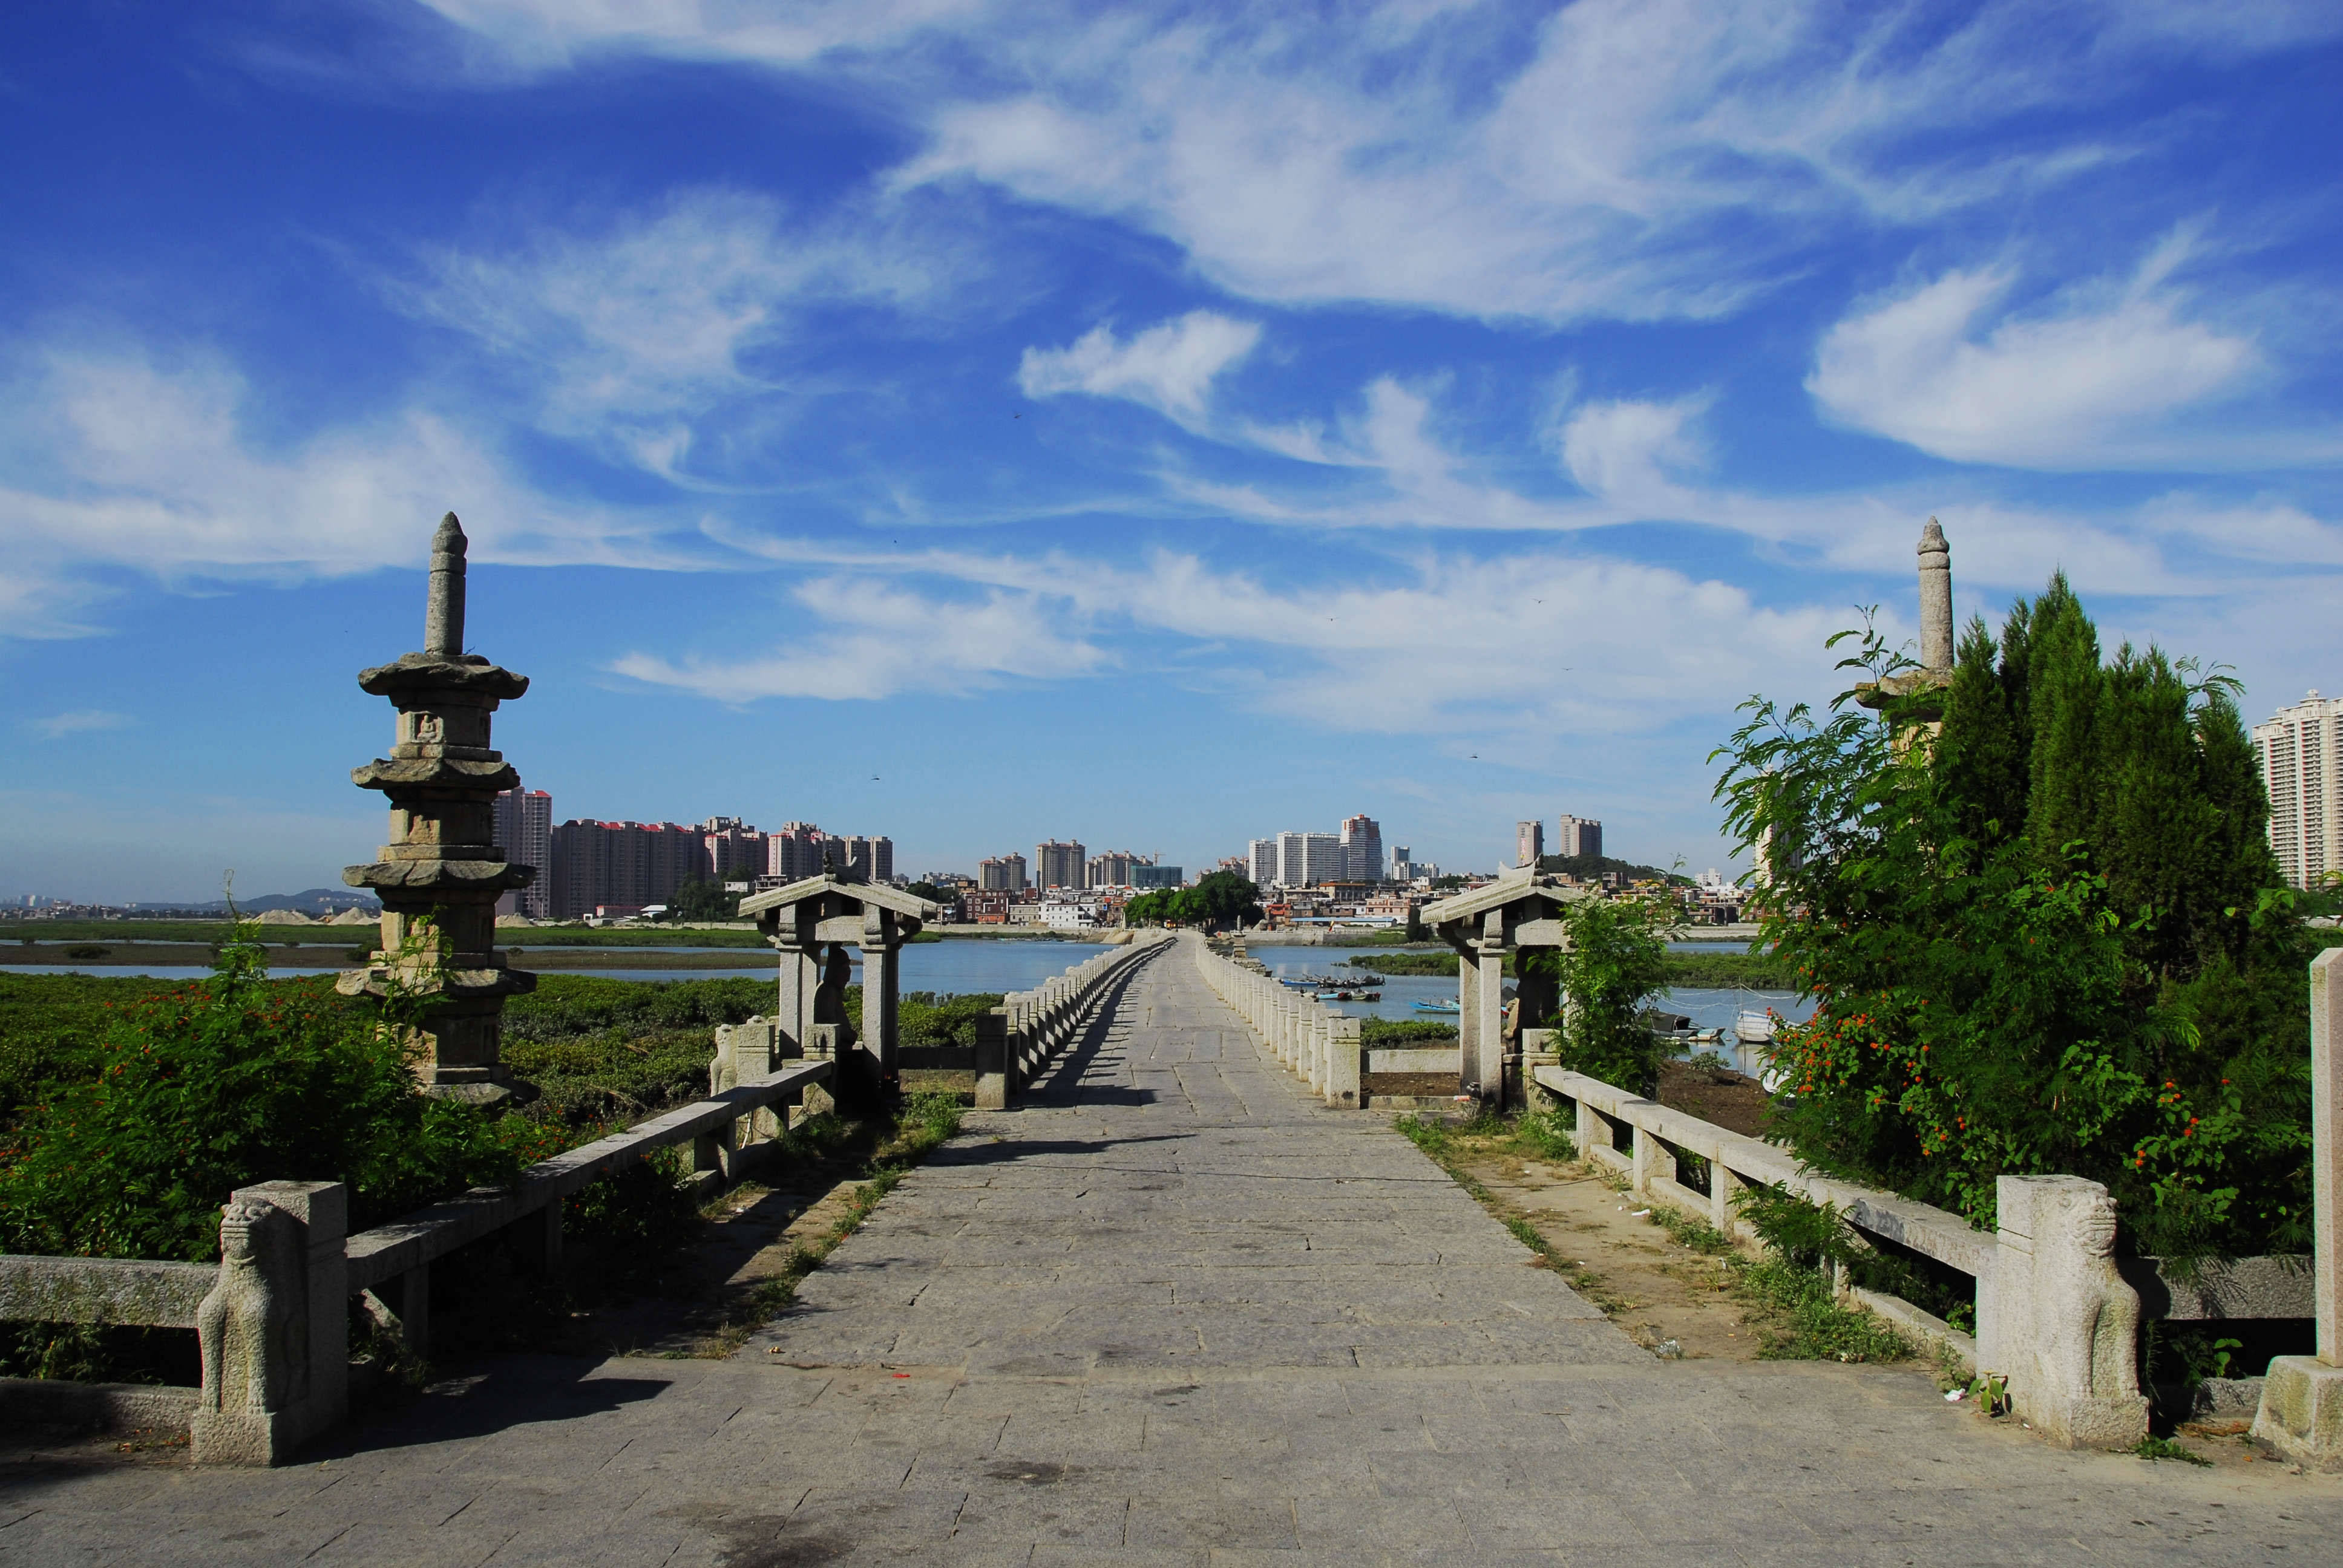 洛阳桥:中国古代桥梁工程的杰作,海上丝绸之路的申遗点